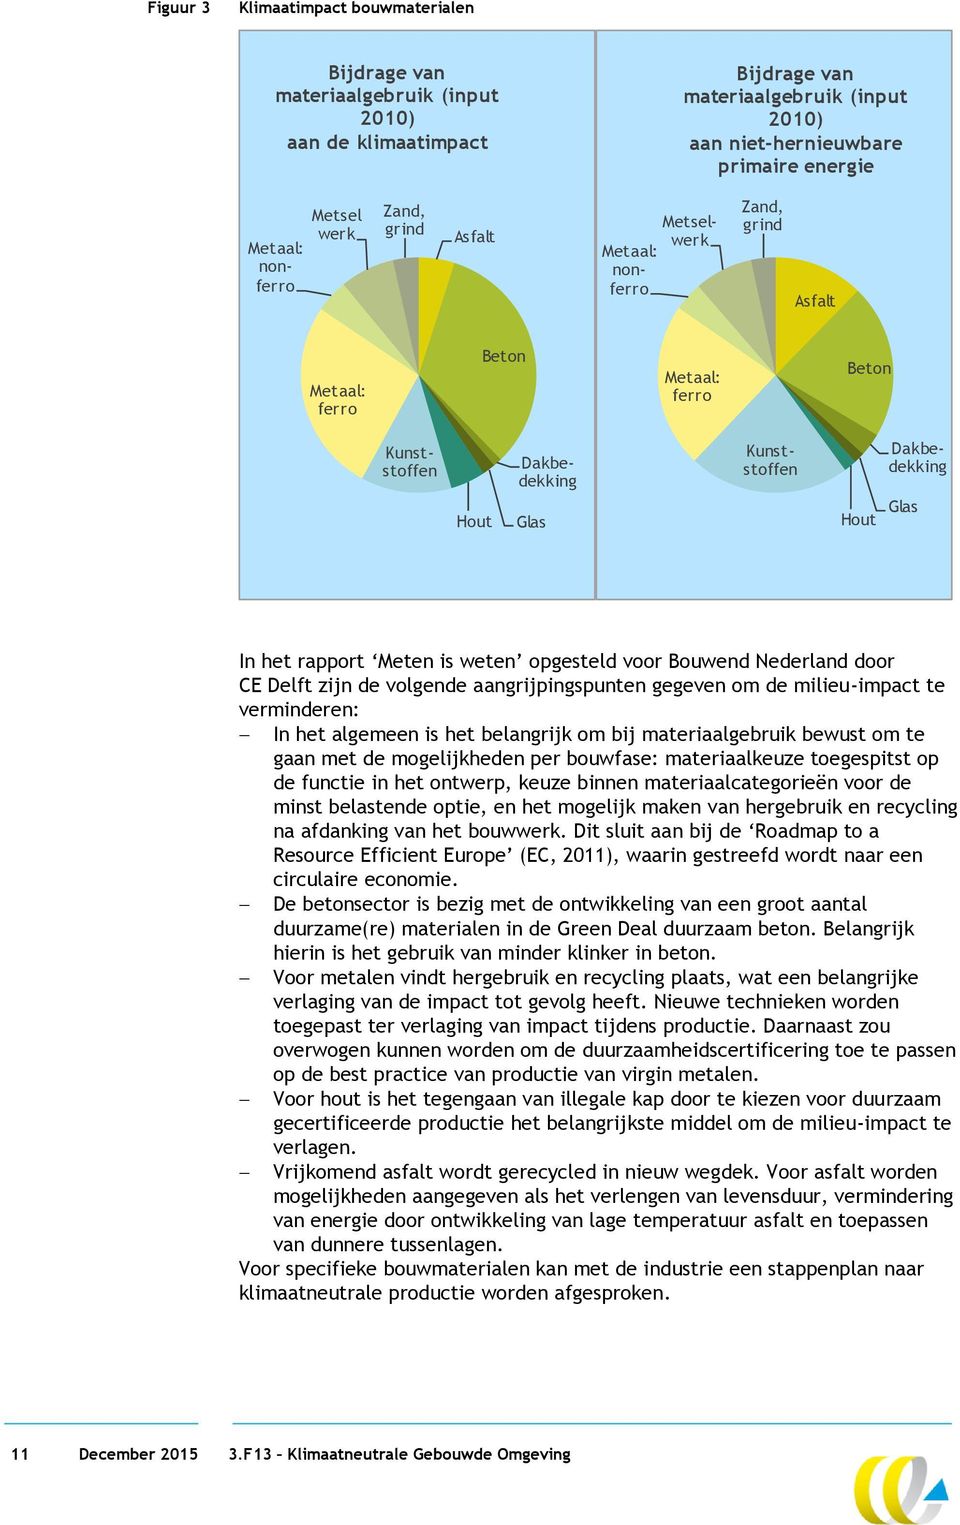 In het rapport Meten is weten opgesteld voor Bouwend Nederland door CE Delft zijn de volgende aangrijpingspunten gegeven om de milieu-impact te verminderen: In het algemeen is het belangrijk om bij